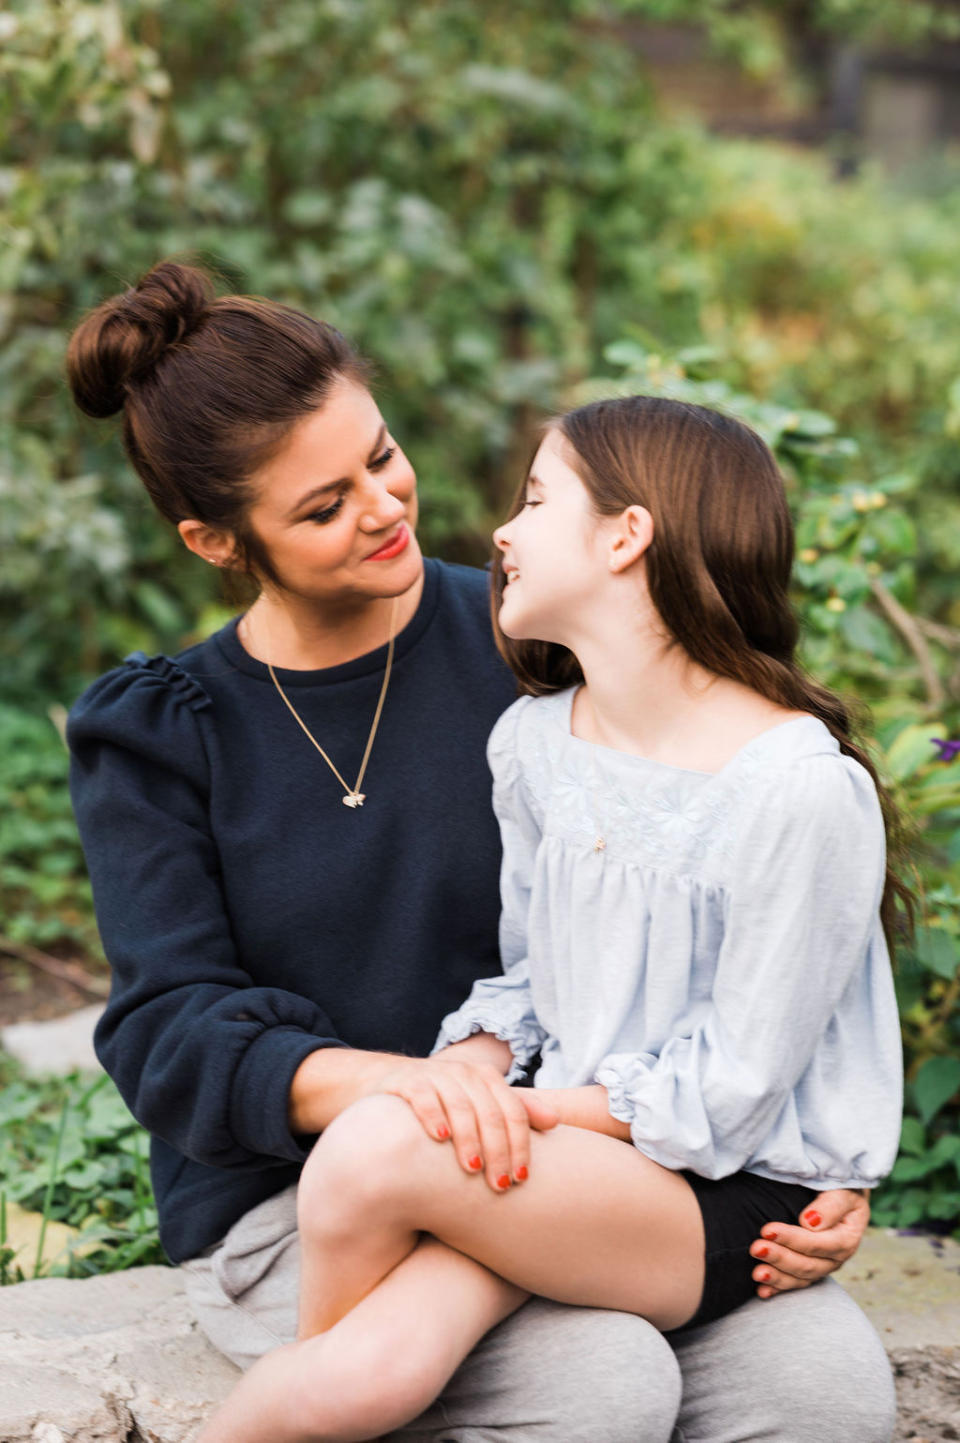 Thiessen with her daughter, Harper. (Photo: Tiffani Thiessen)